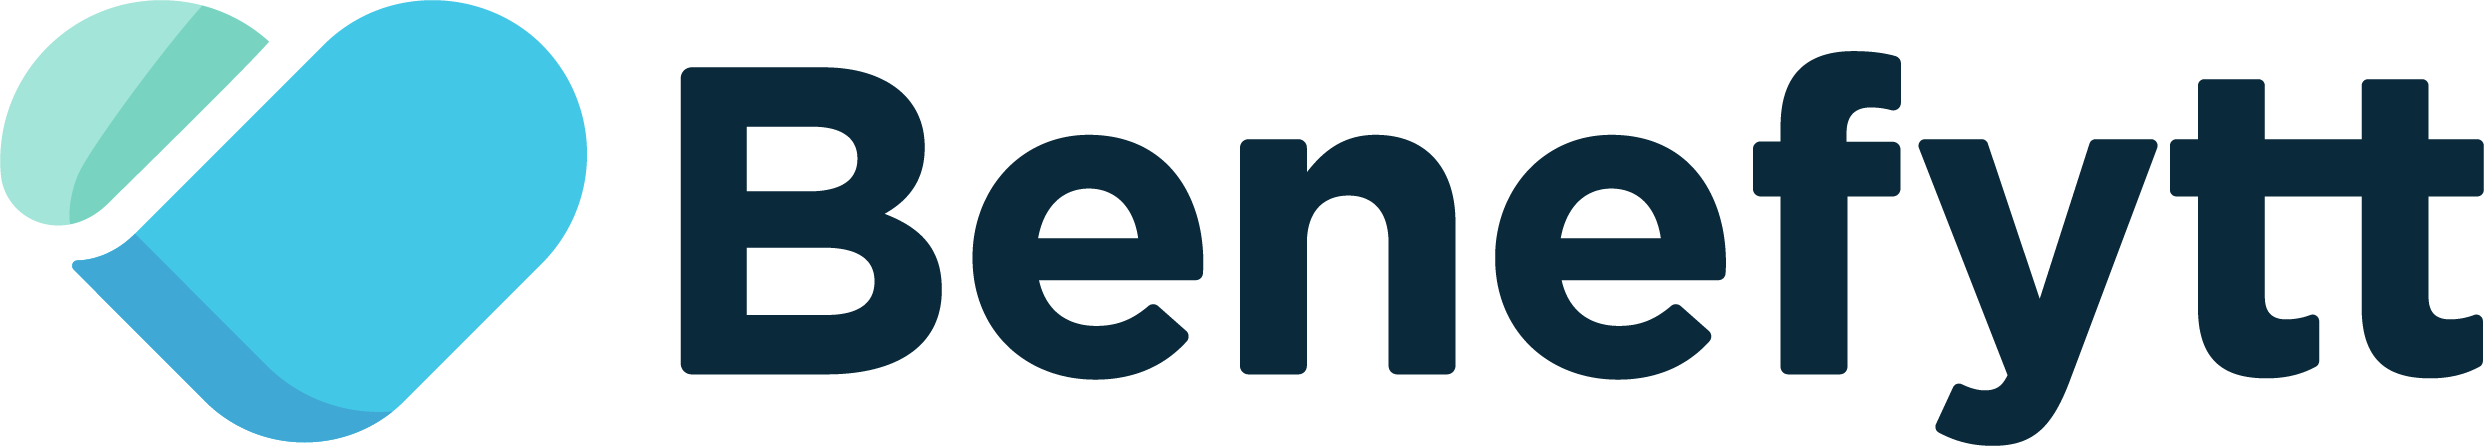 Benefytt Logo.png